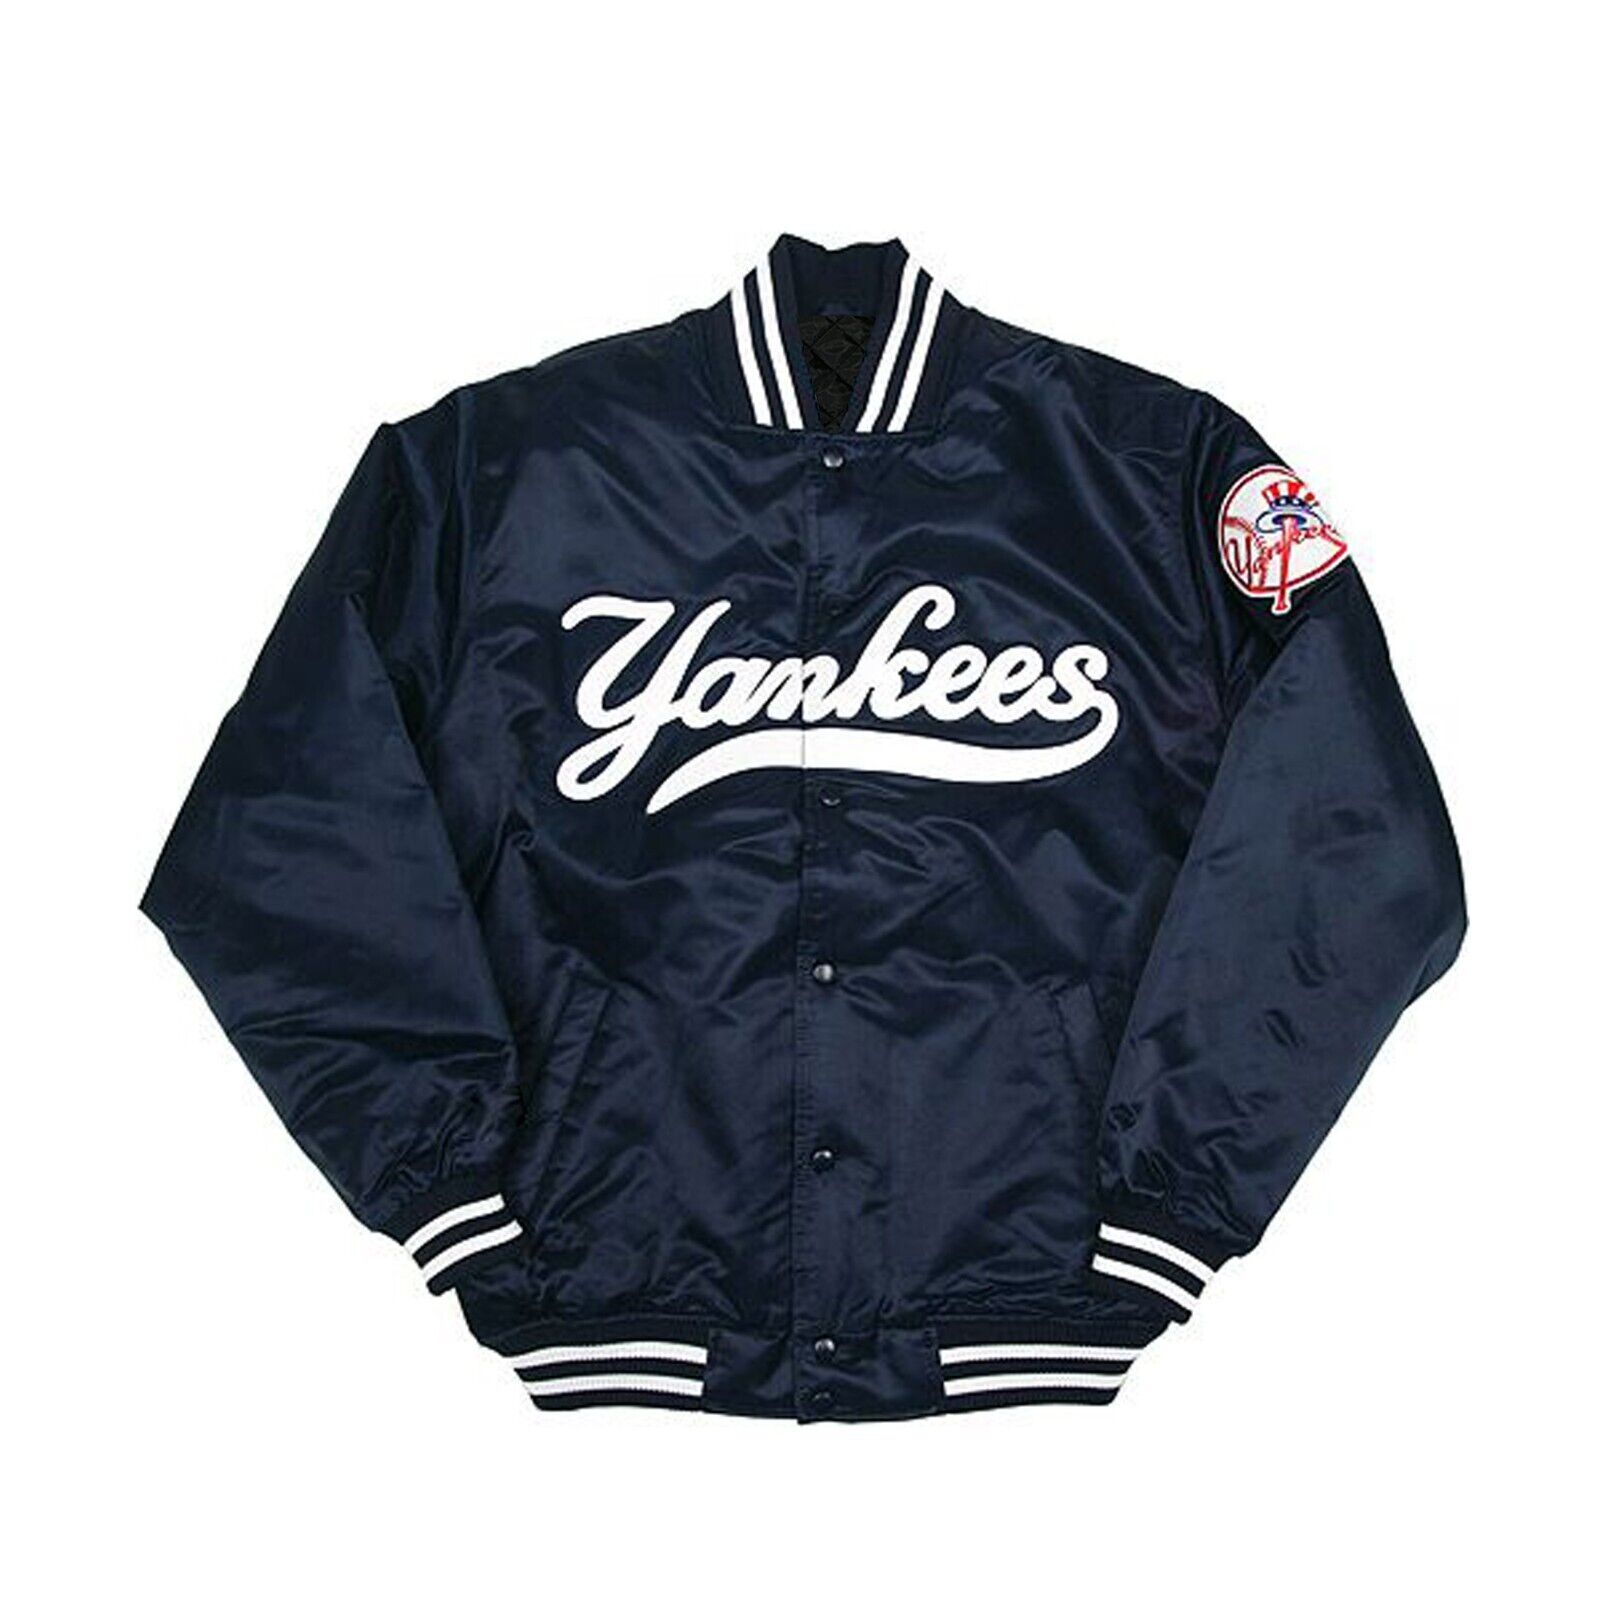 NY Yankees Vintage 90s Athletic Jacket Blue Satin Bomber Style Varsity Jacket